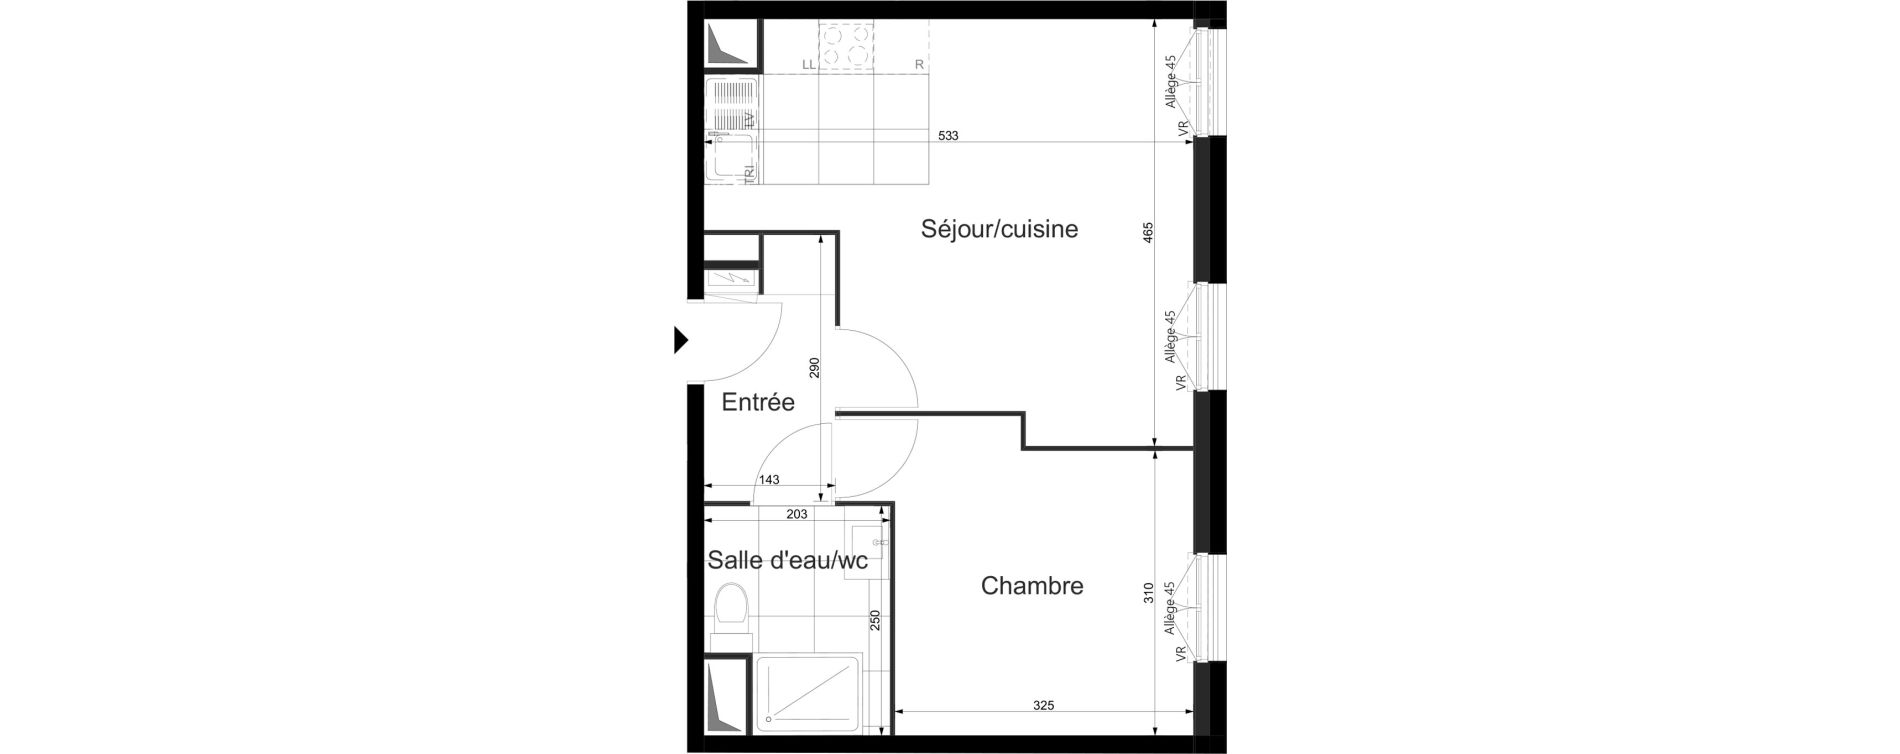 Appartement T2 de 40,20 m2 au Plessis-Tr&eacute;vise Le val roger - parc de la lande